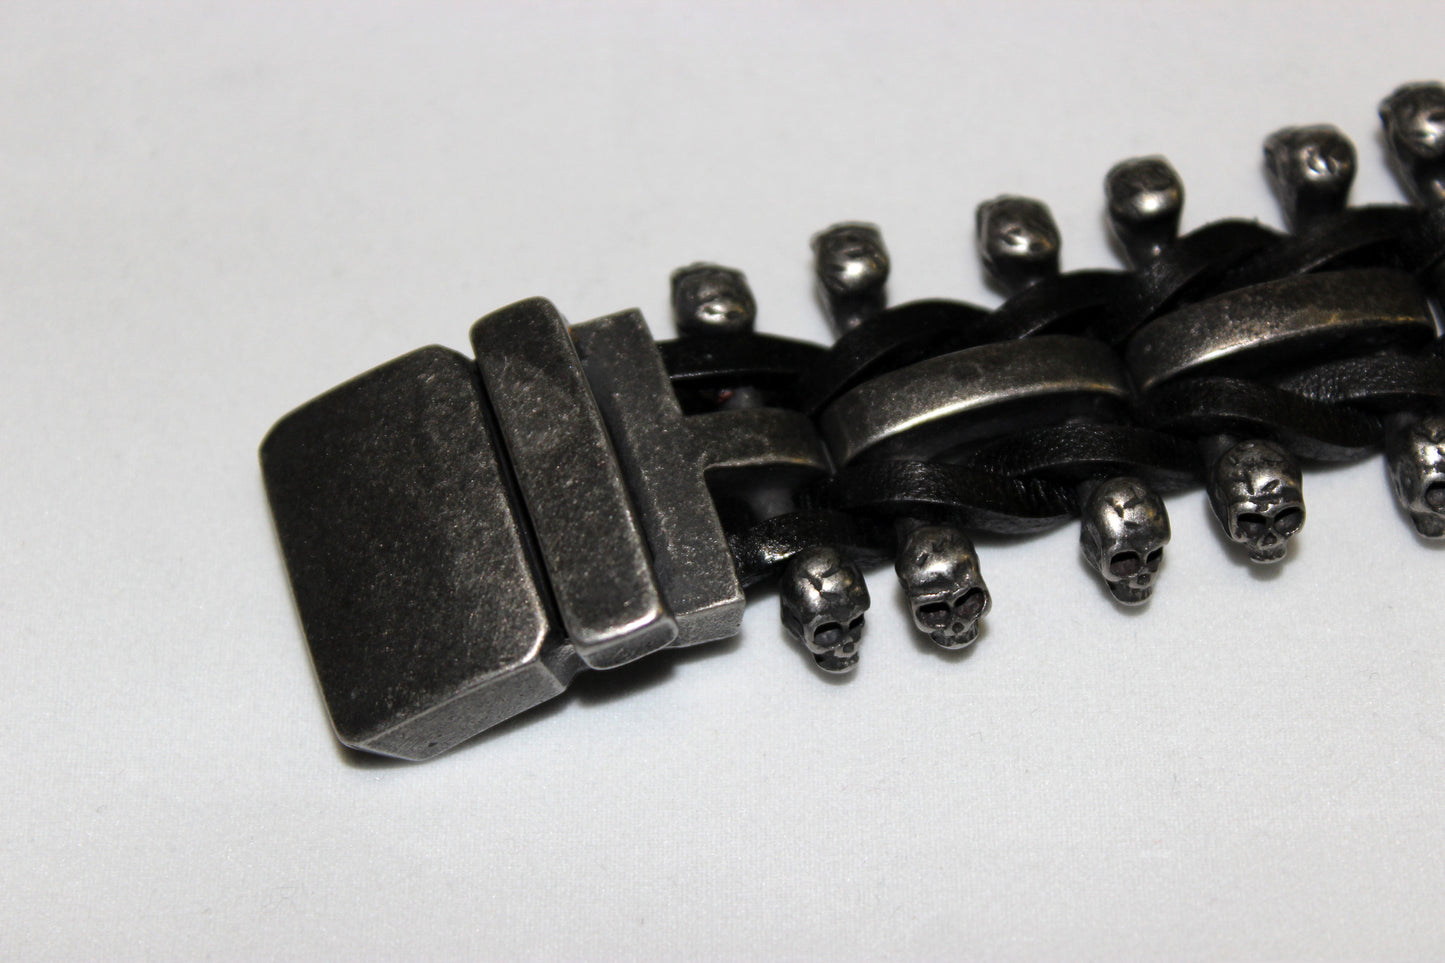 Stainless Steel Skull Links on Outside Weaved Leather Bracelet - UDINC0456